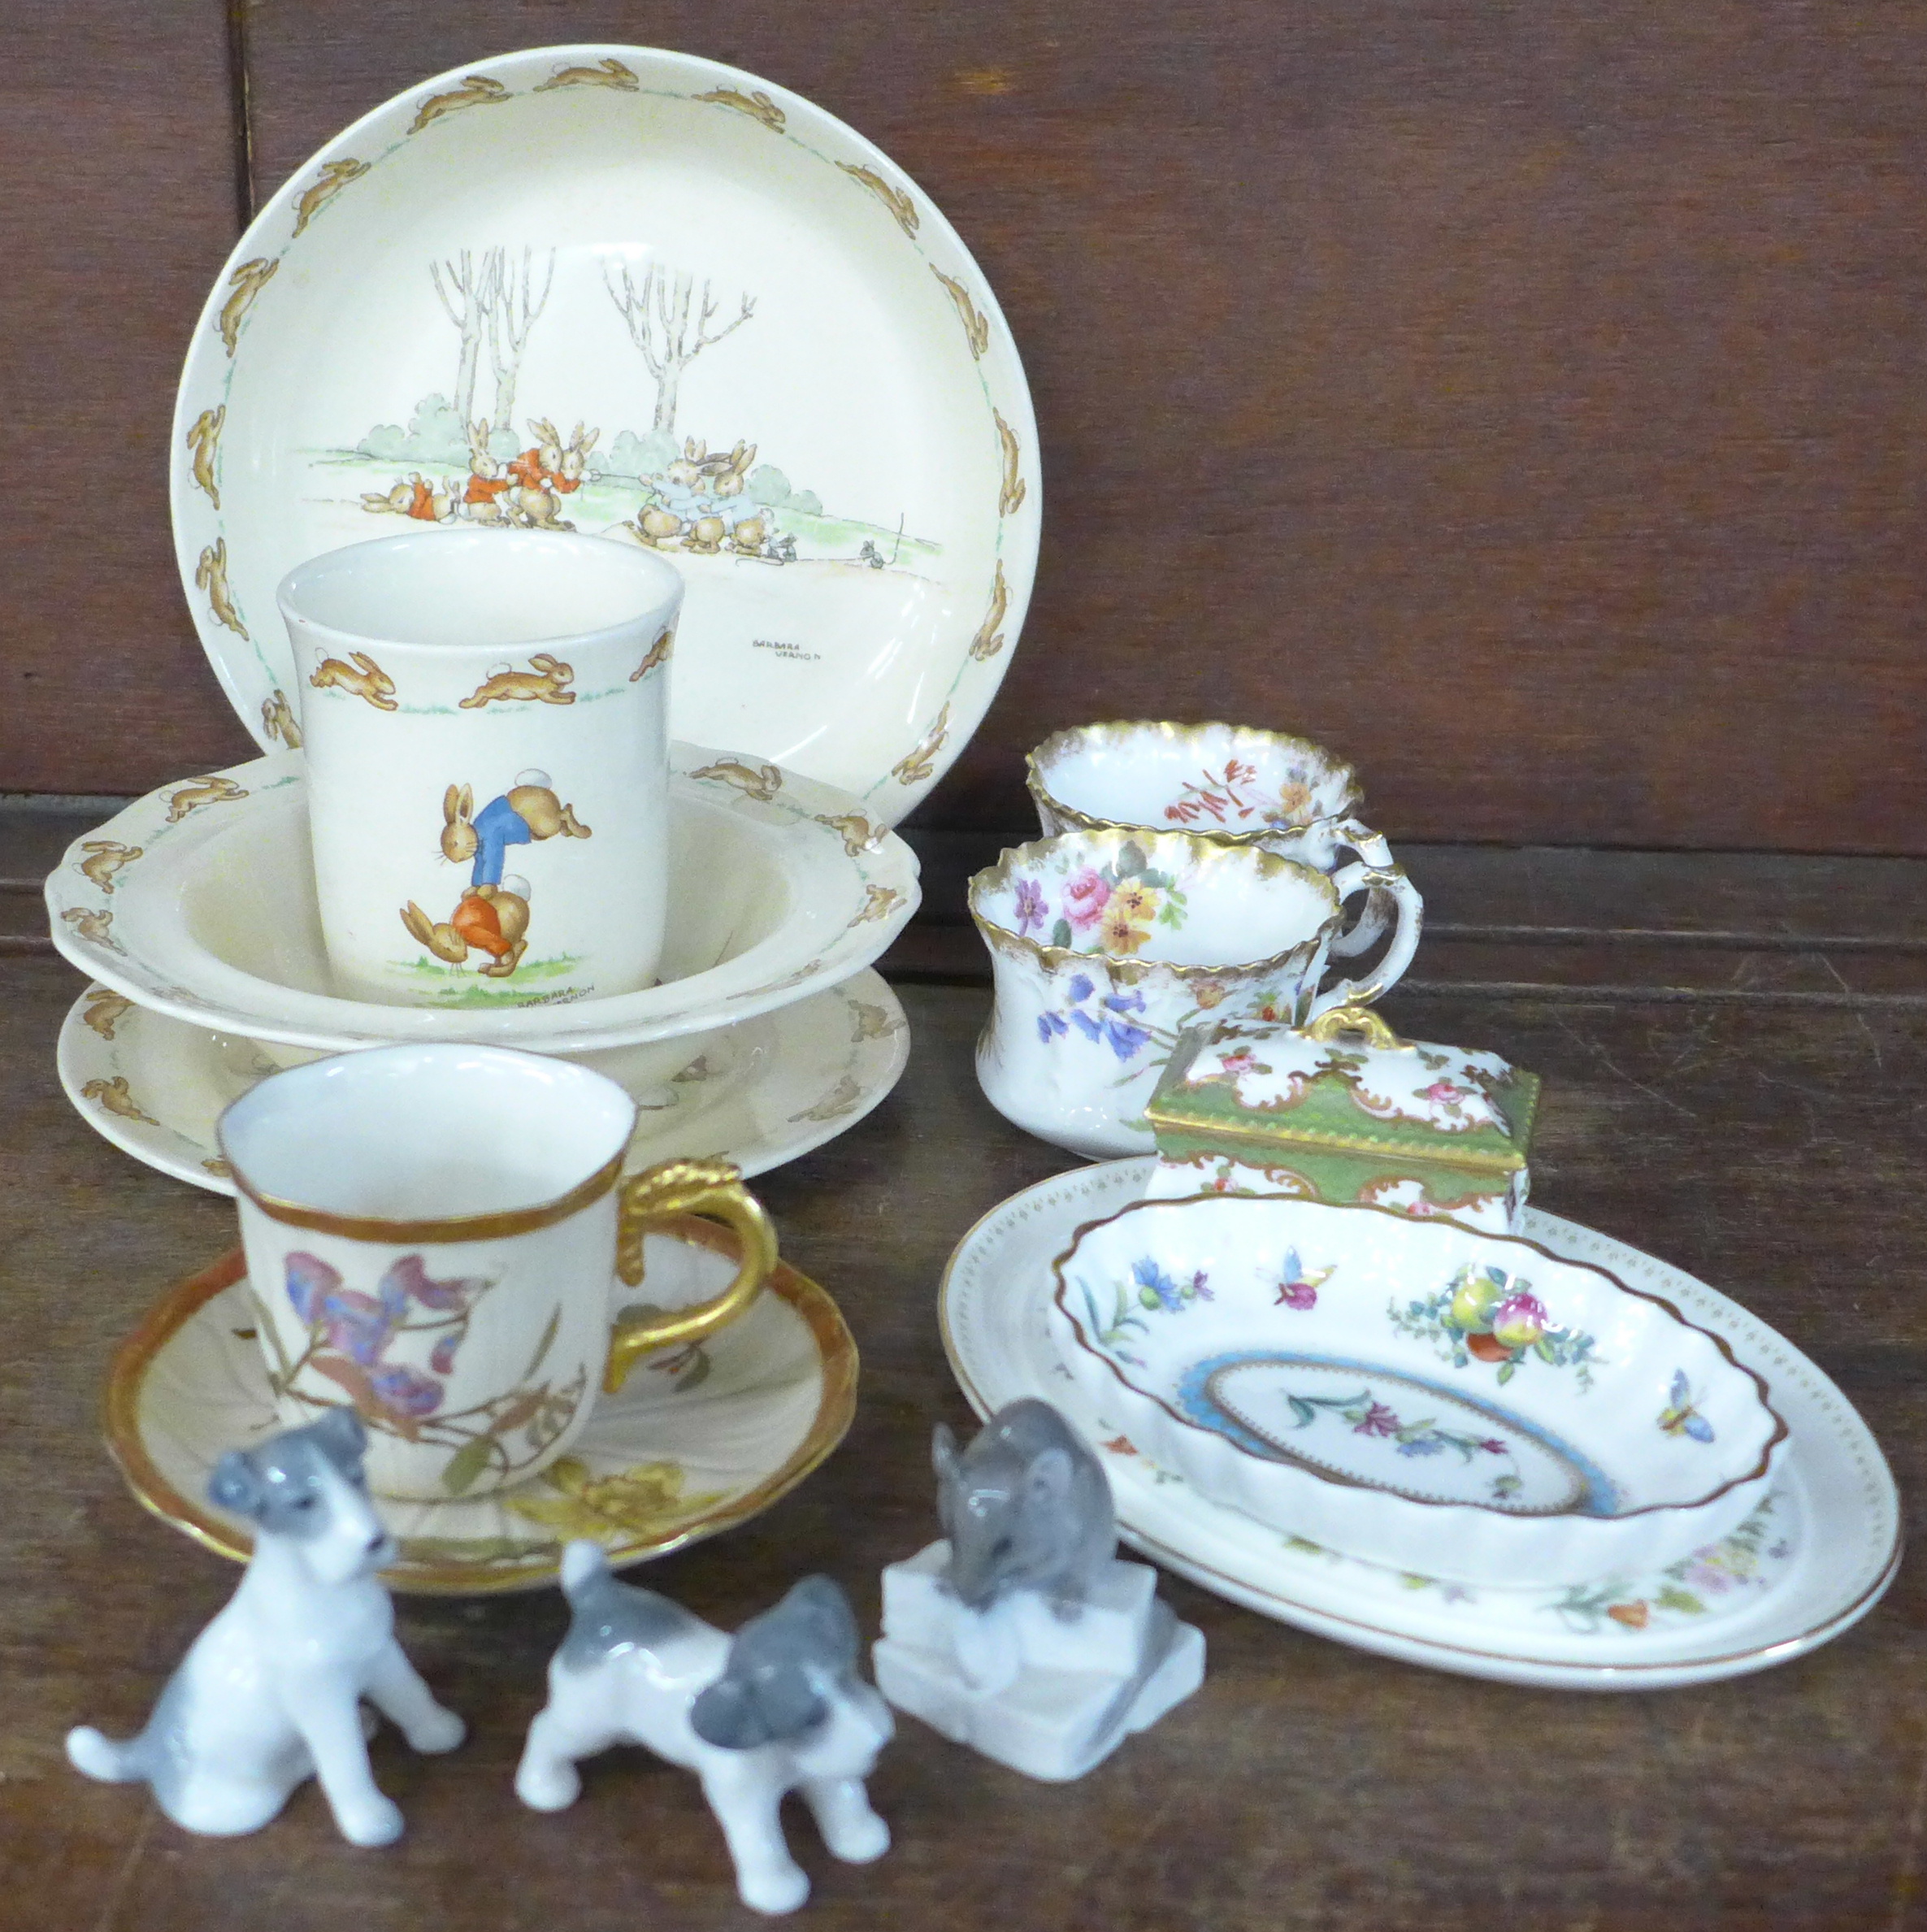 Royal Doulton Bunnykins bowl, dish, plate and mug, Spode, Wedgwood, Royal Copenhagen and Royal